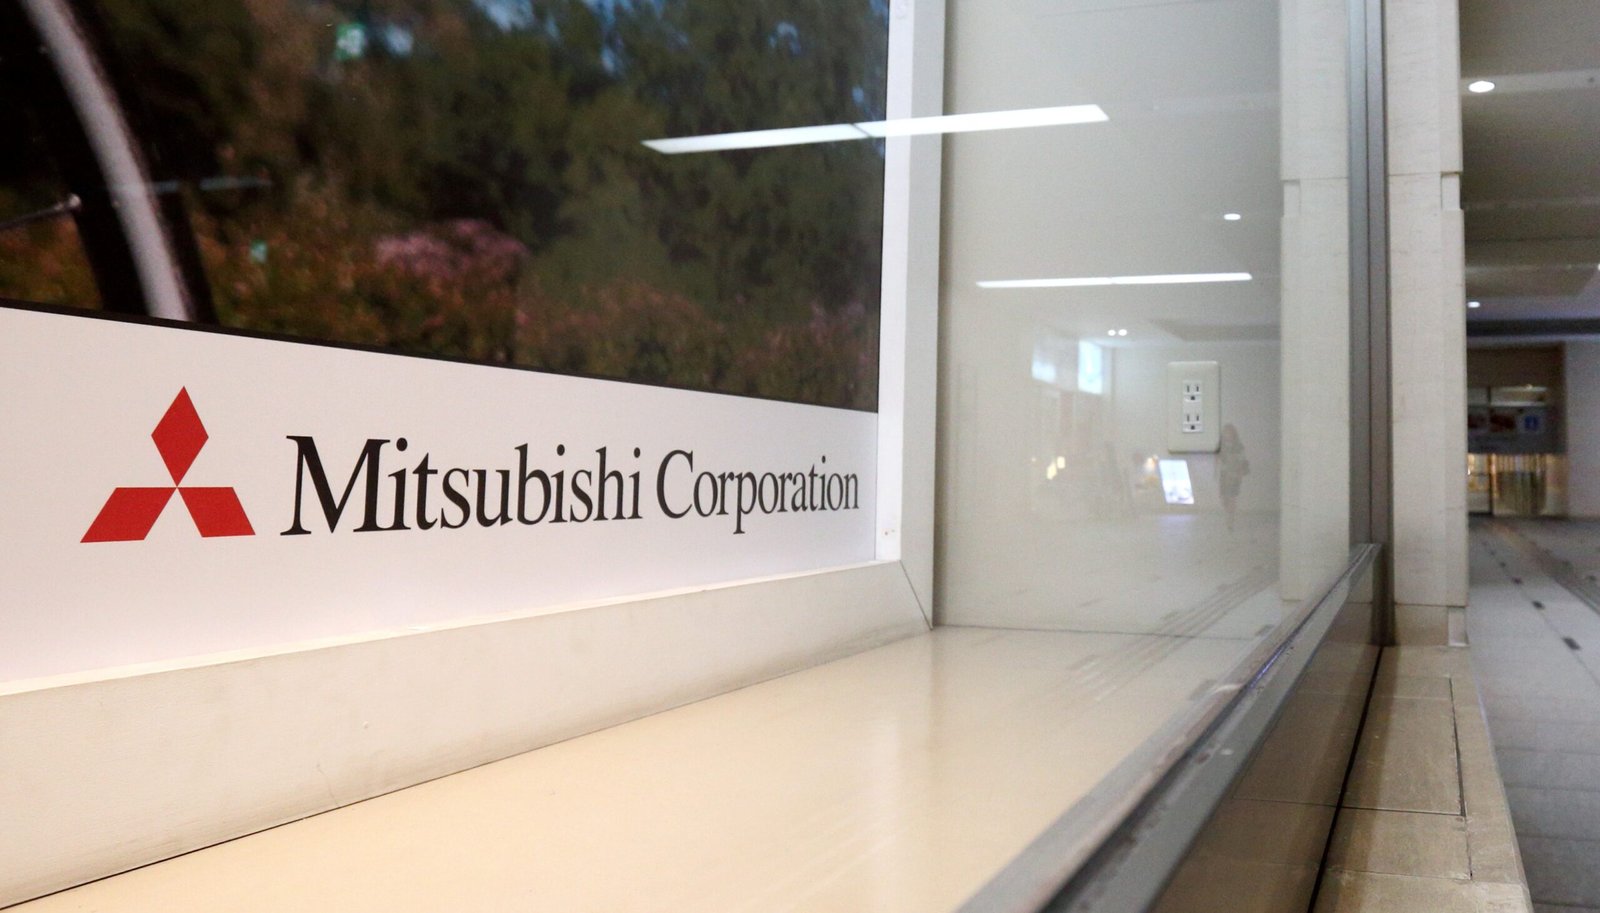 Mitsubishi Corp Marketing Strategy